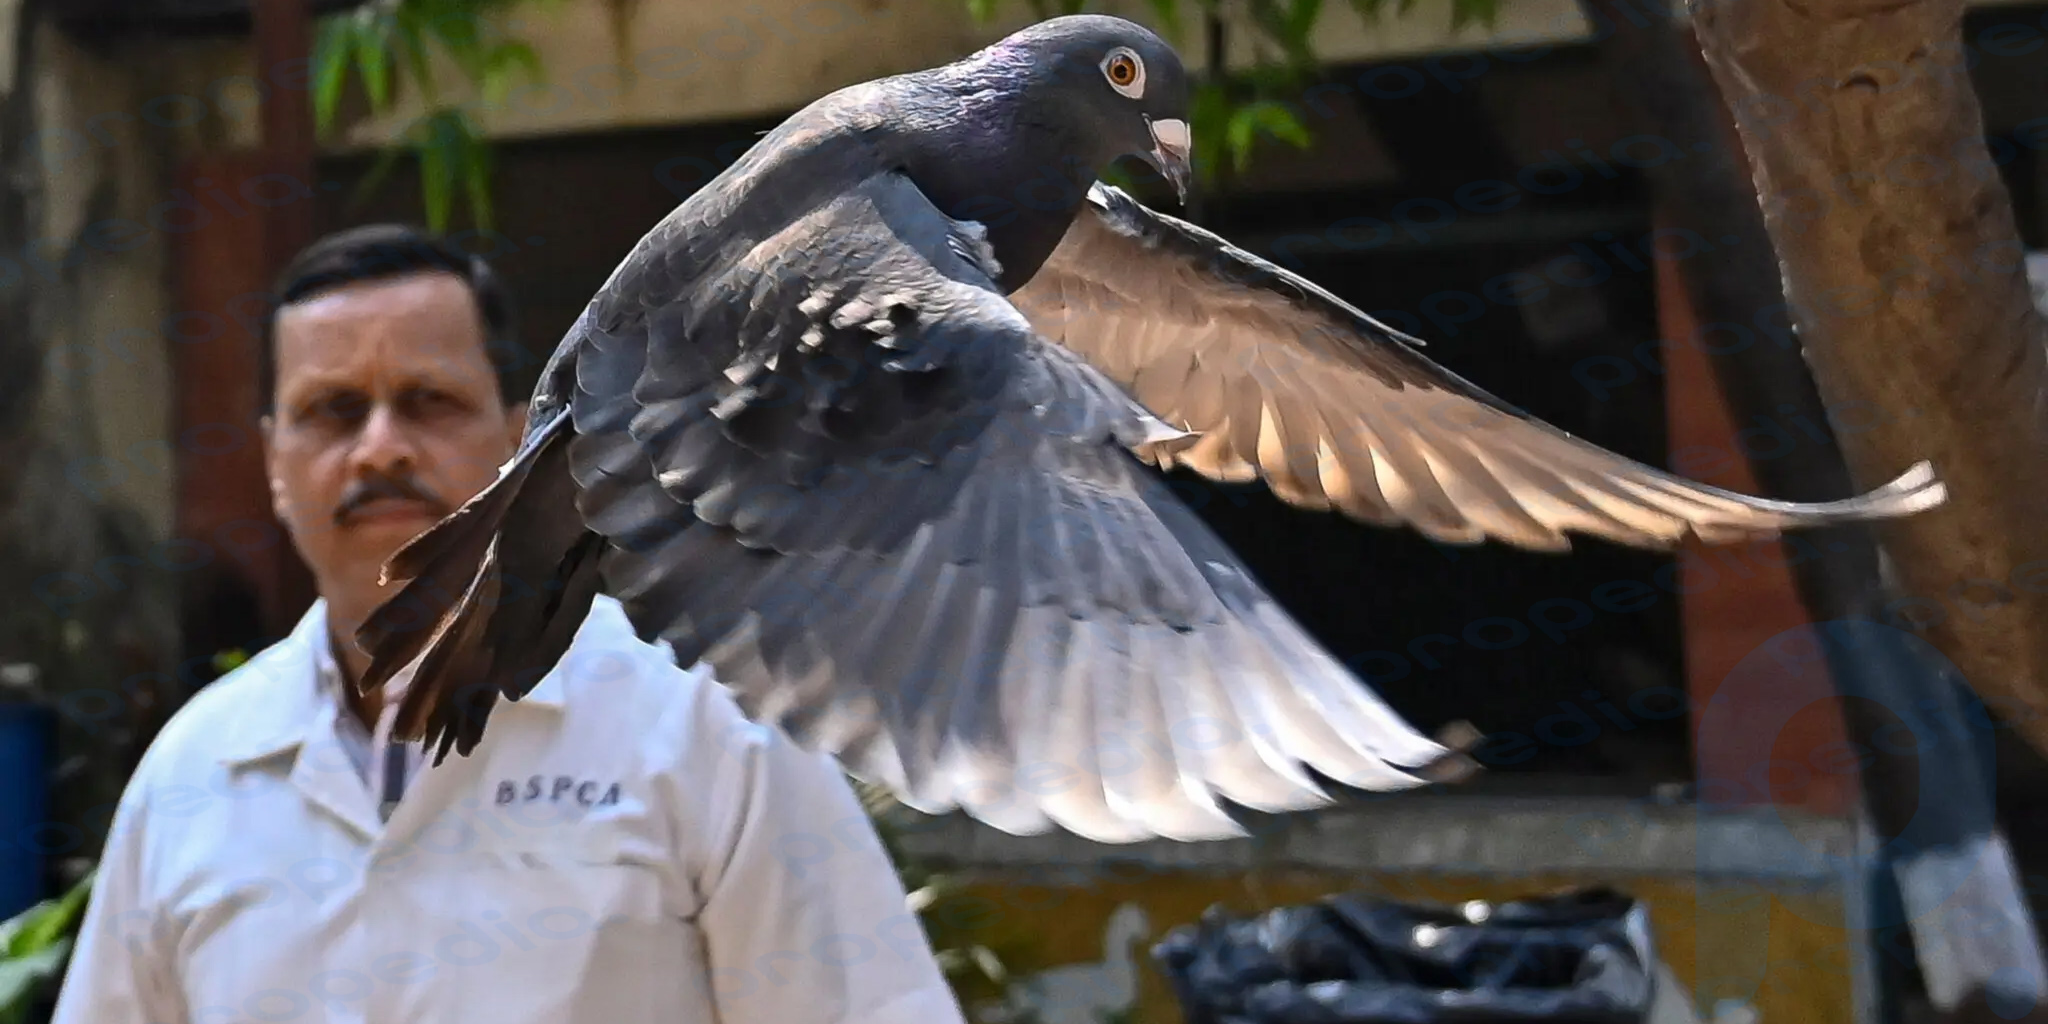 Una paloma fue arrestada en la India.  Fue acusado de espionaje, pero fue liberado después de 8 meses.